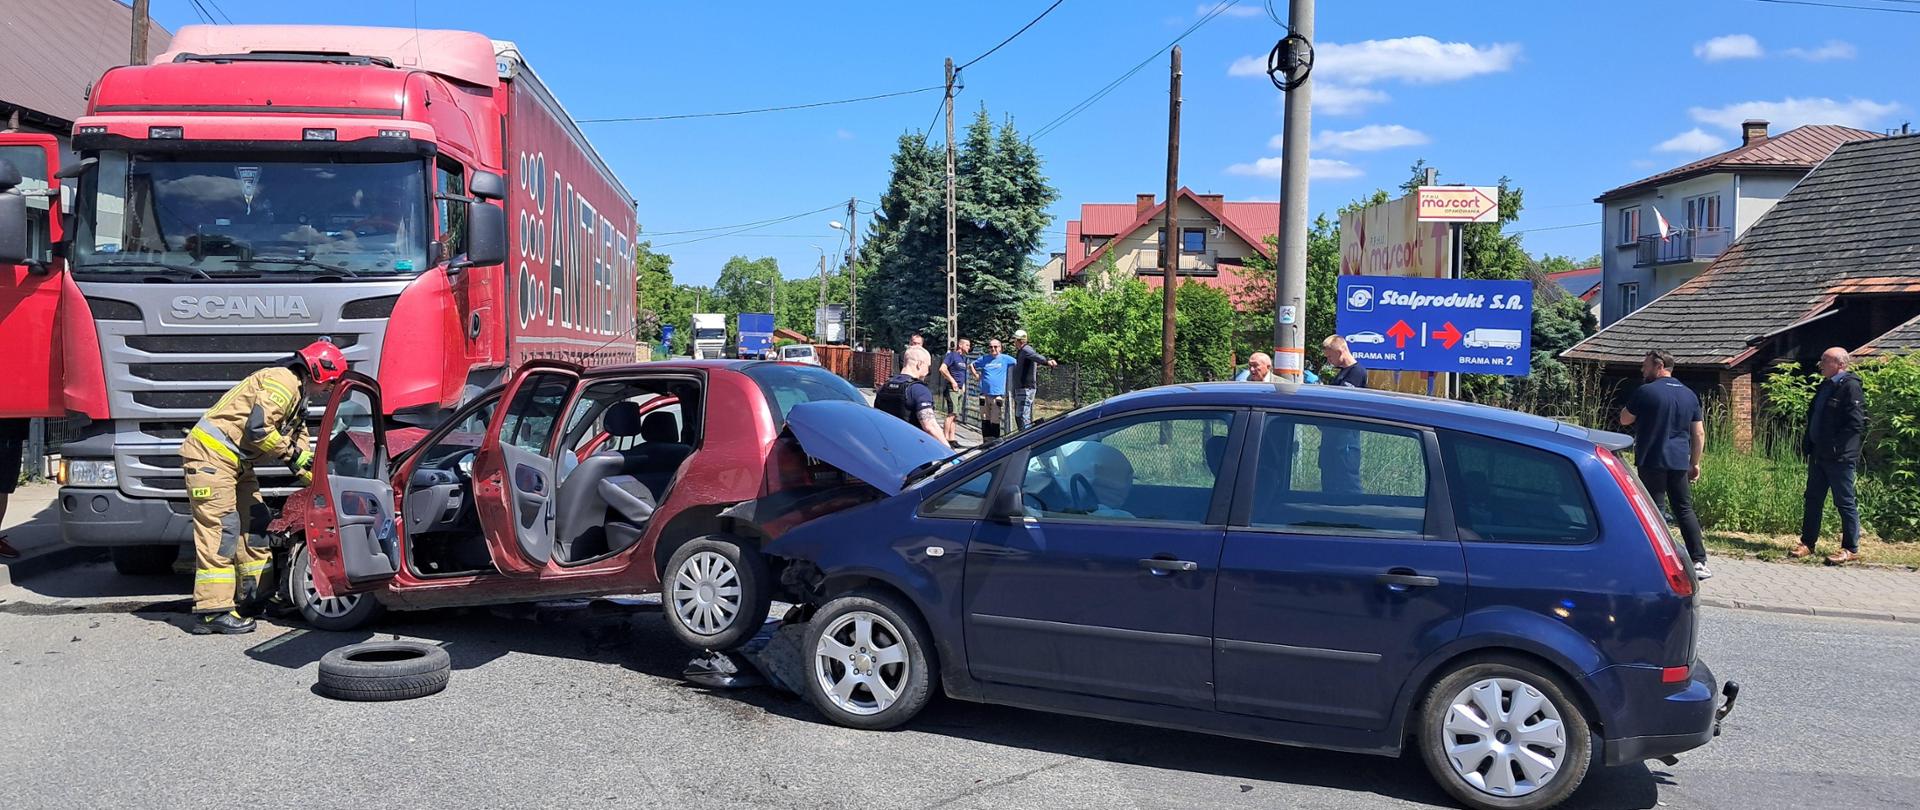 Zdjęcie przedstawia zderzenie trzech pojazdów – dwóch osobowych i jednego ciężarowego. Na zdjęciu widać przód czerwonego pojazd ciężarowego .Po prawej stronie widać czerwony samochód osobowy który uderzył przodem w samochód ciężarowy a w jego tył wjechał drugi niebieski samochód osobowy. Czerwony pojazd ma zniszczony przód, otwarte drzwi przednie i tylne oraz podniesiony tył, koła unoszą się nad drogą. Na zdjęciu widać drugi niebieski pojazd który ma uszkodzony przód i podniesiona maskę przednią. Po lewej stronie widać strażaka w piaskowym mundurze i czerwonym hełmie który odpina akumulator w pojeździe. Przed pojazdami leży opona. Z tył pojazdów widać osoby postronne.